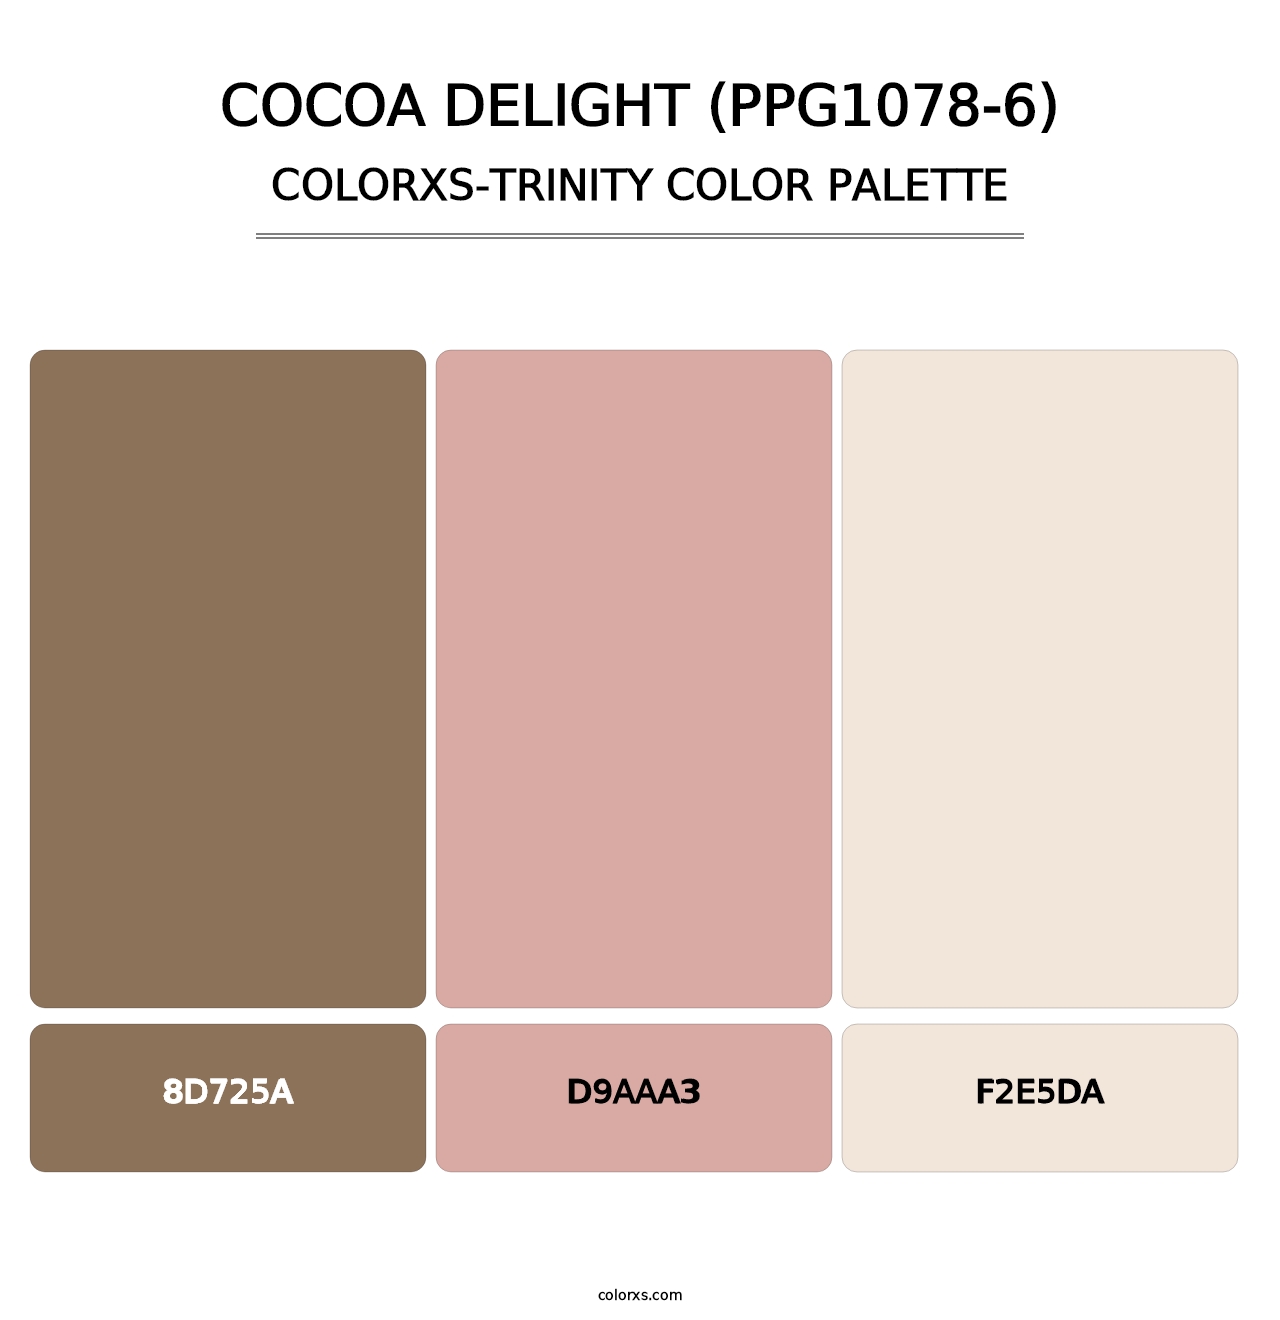 Cocoa Delight (PPG1078-6) - Colorxs Trinity Palette